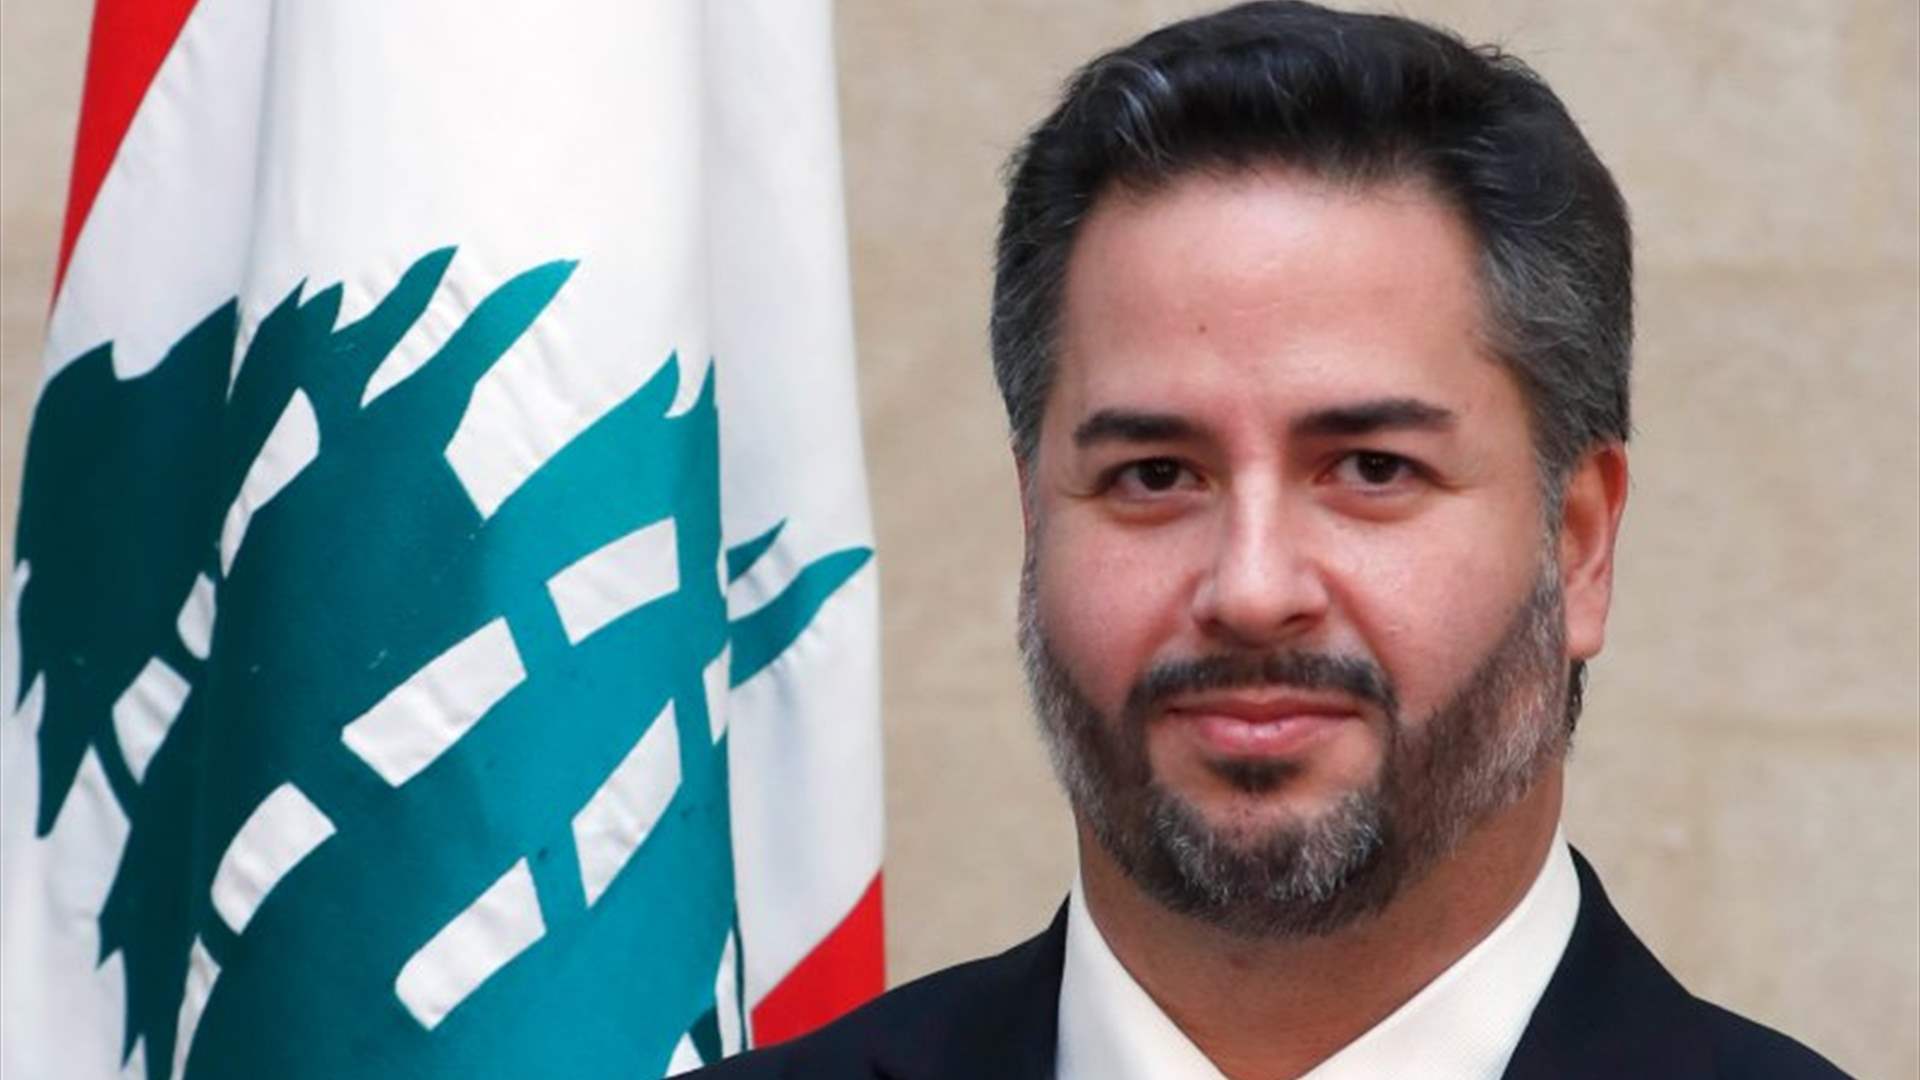 سلام: صلاحية وزير الاقتصاد على قطاع التأمين في لبنان رقابية